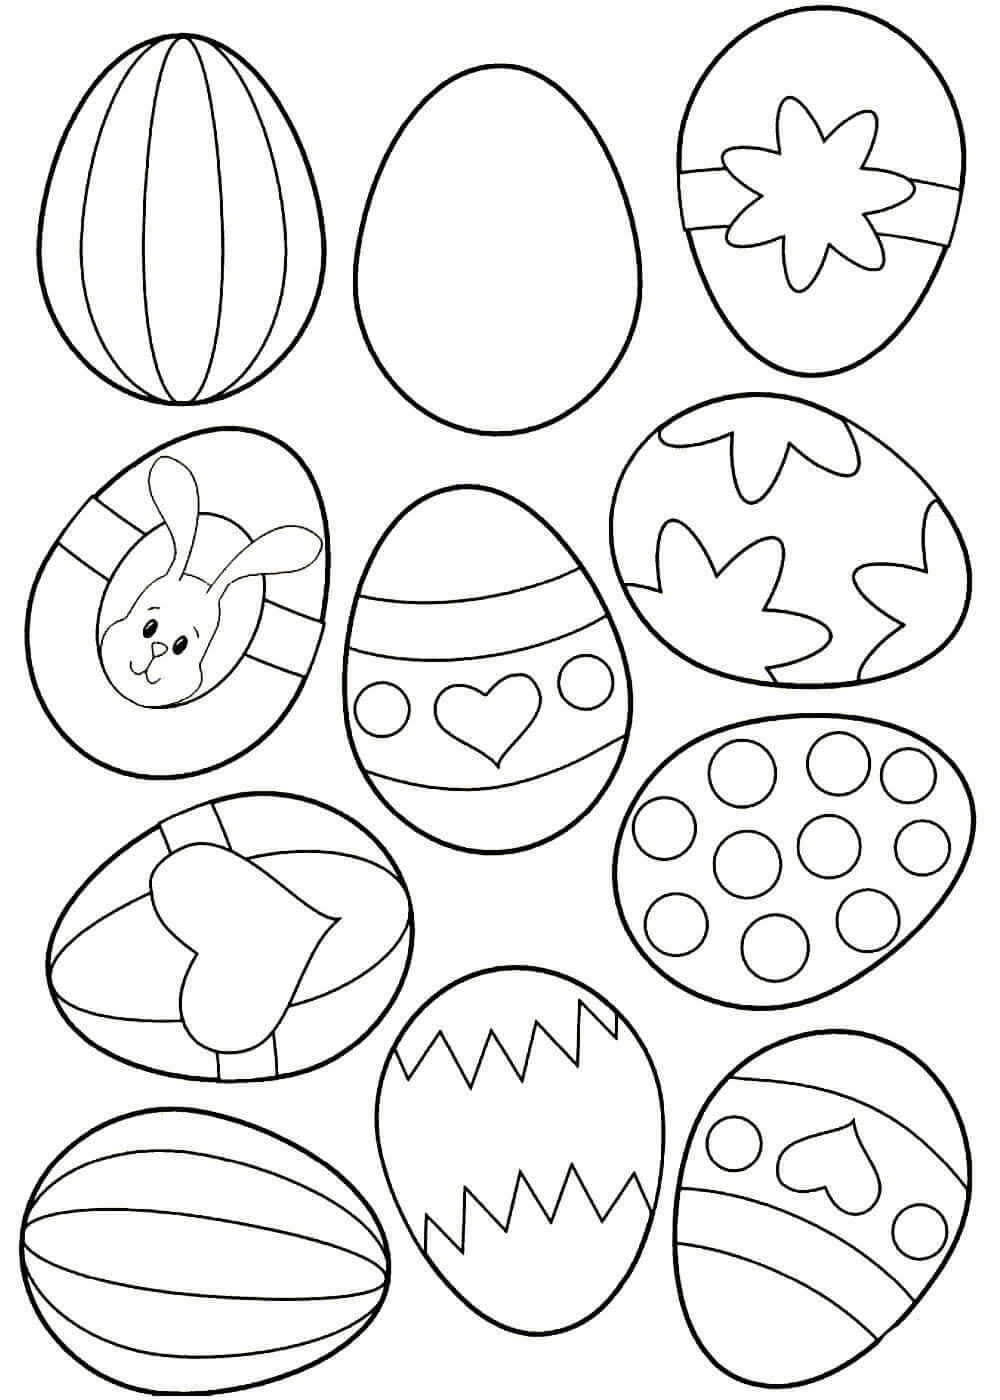 Раскрашивание пасхальных яиц с детьми